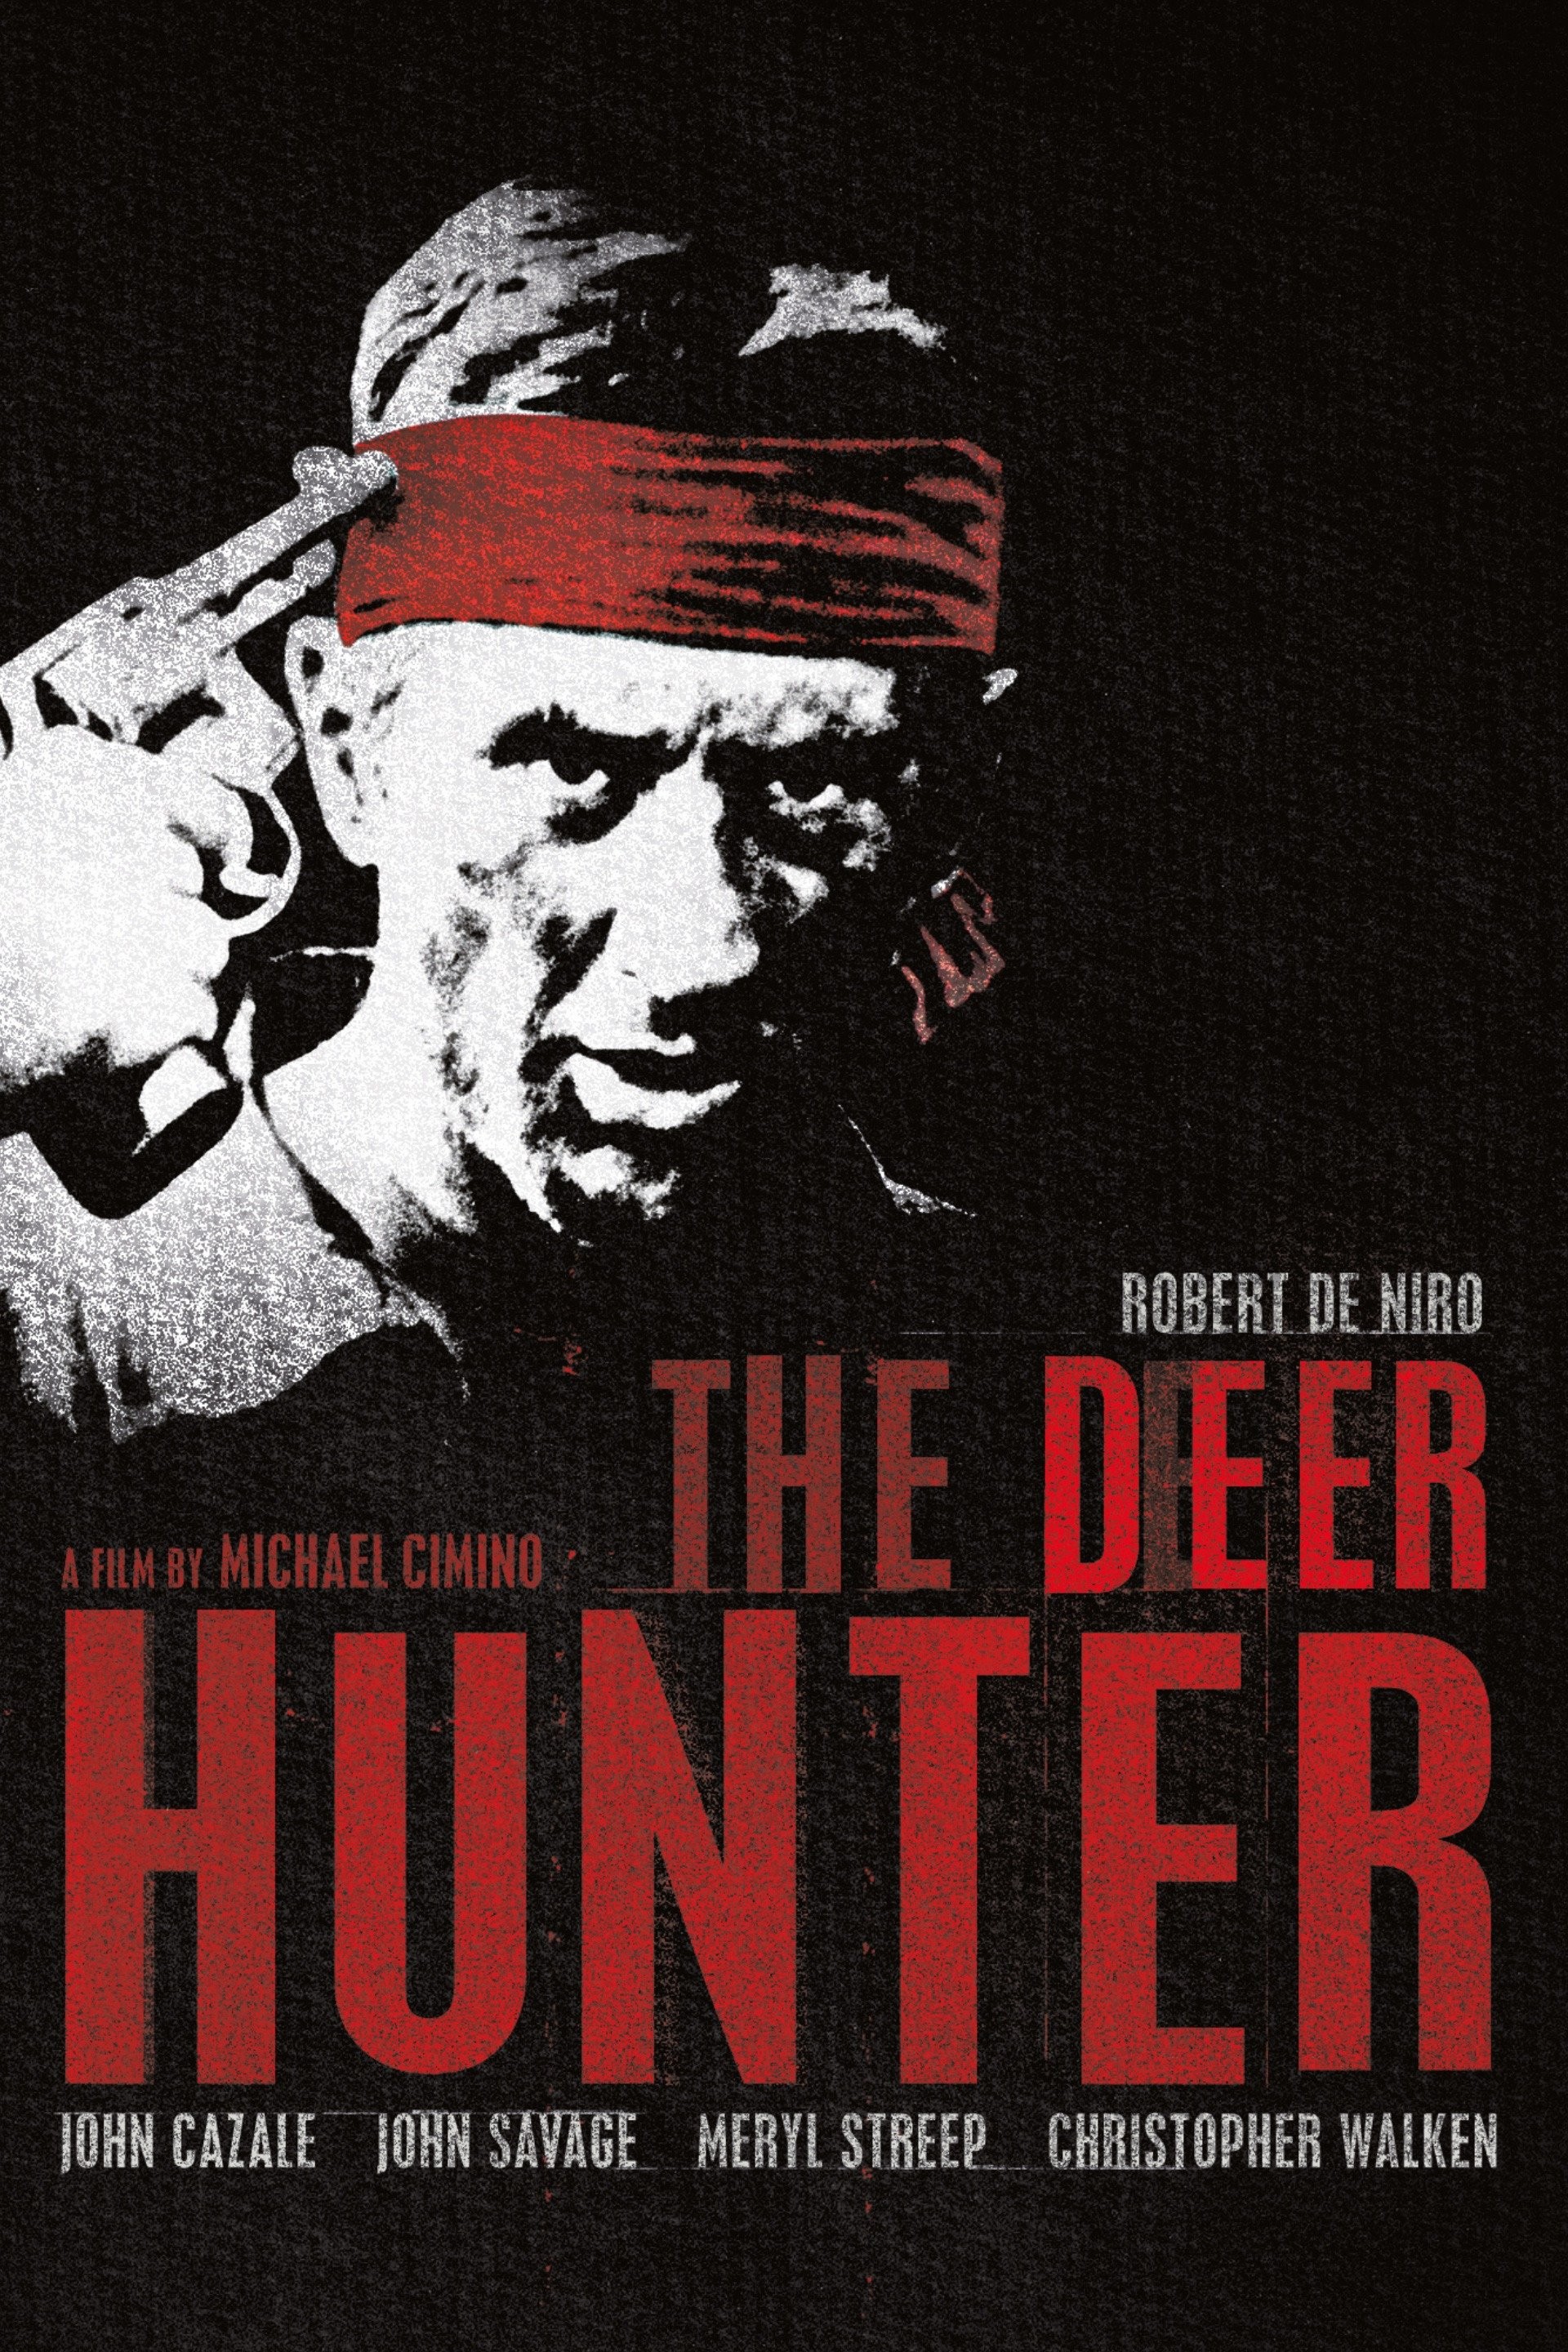 Friday Hunt – Hunter X Hunter challenge week 11 - I drink and